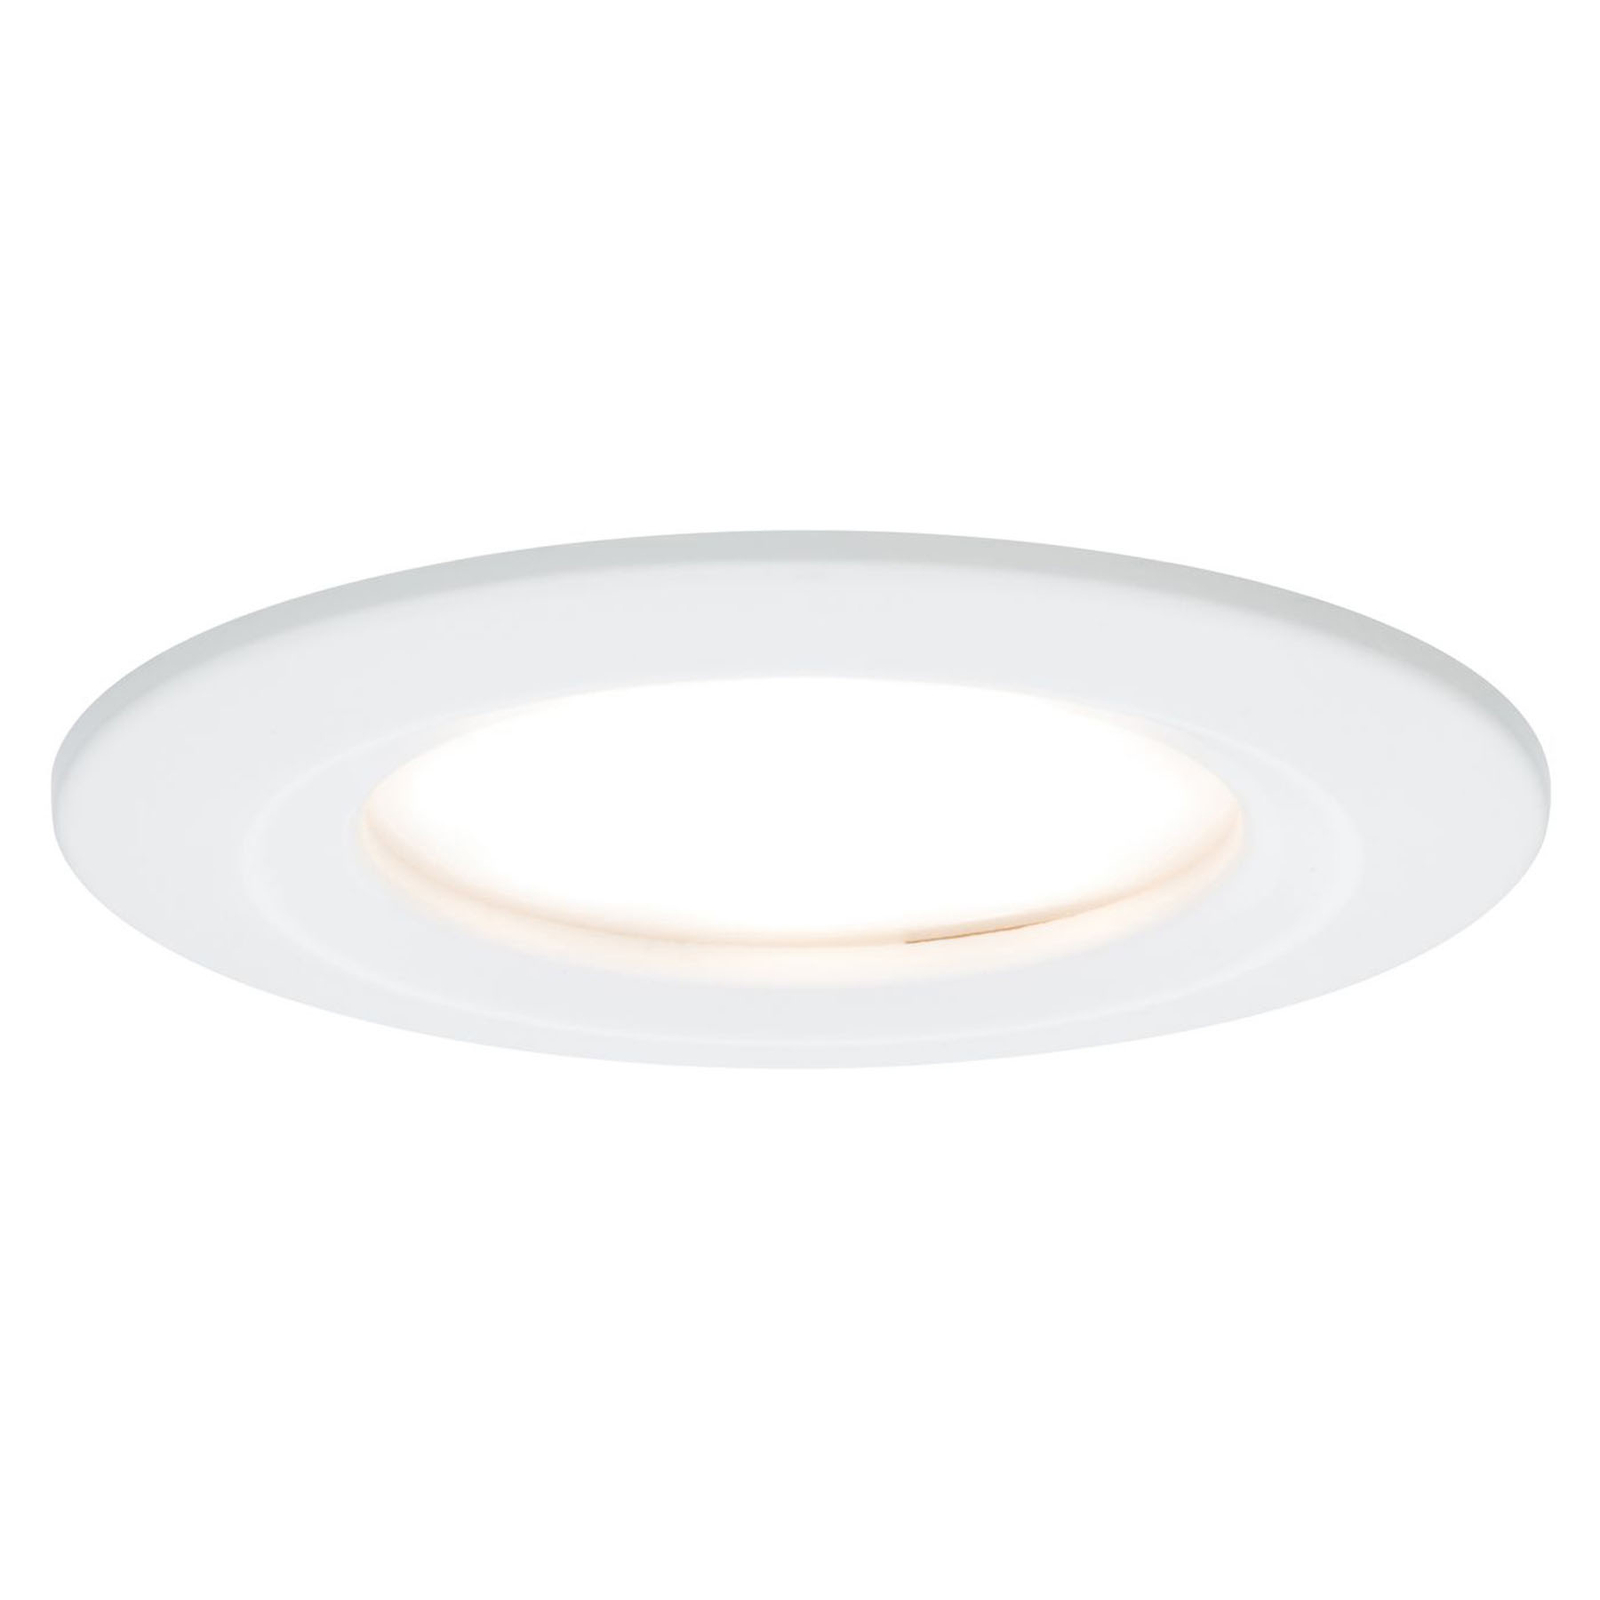 Paulmann Nova LED podhledové světlo 3ks pevné bílé